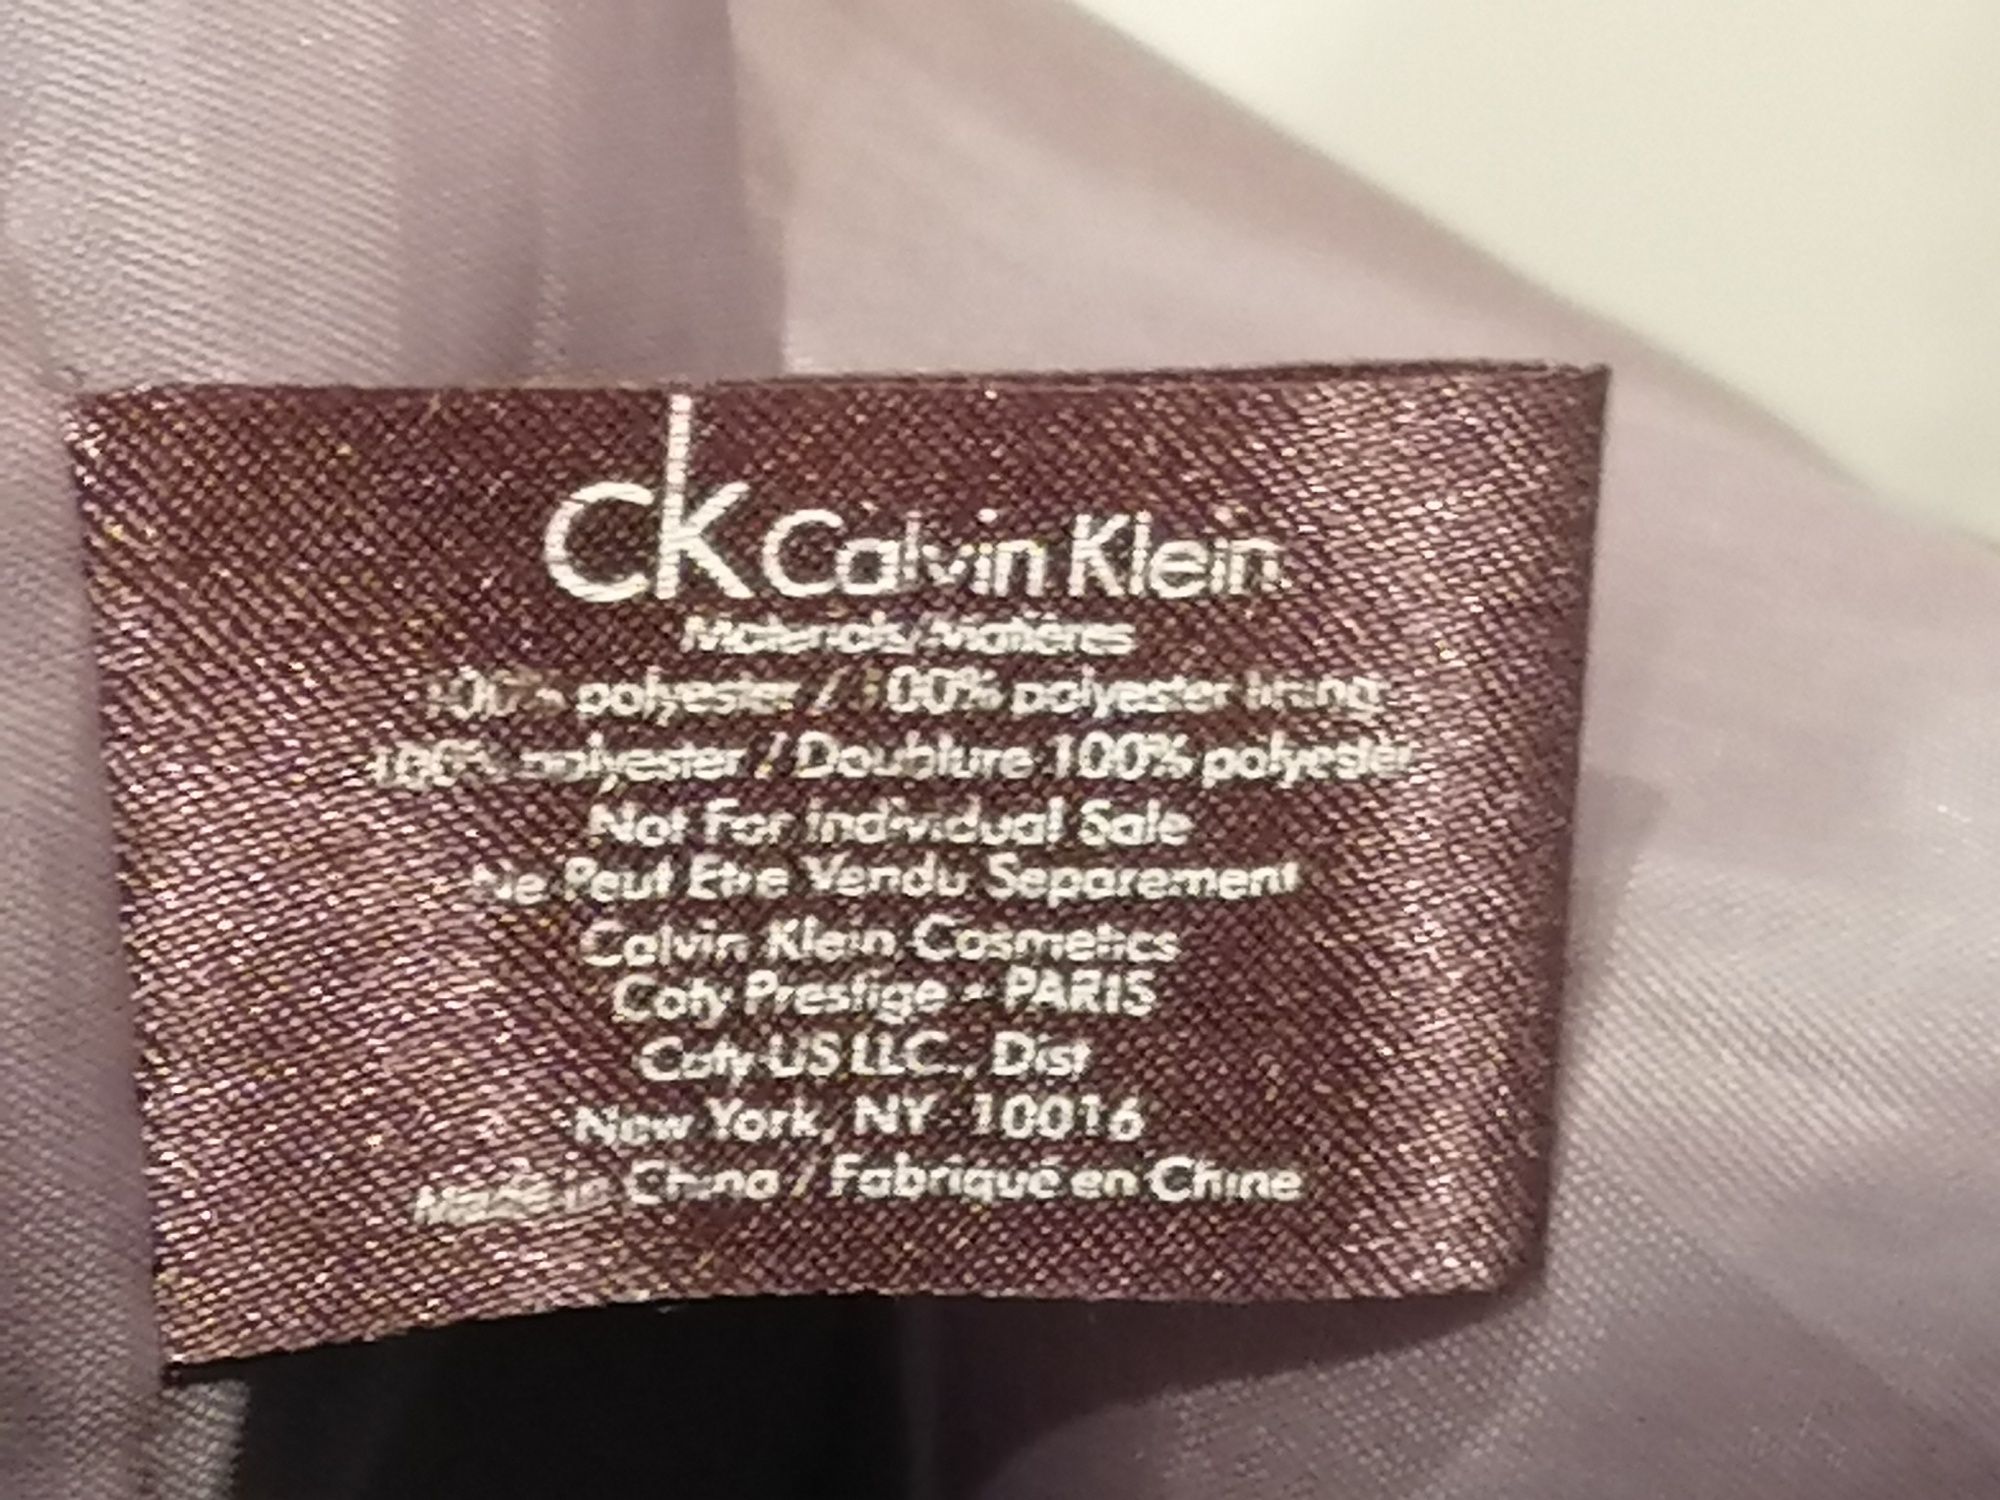 Mala saco à tiracolo, da Calvin Klein, tem um bolso com fecho na aba